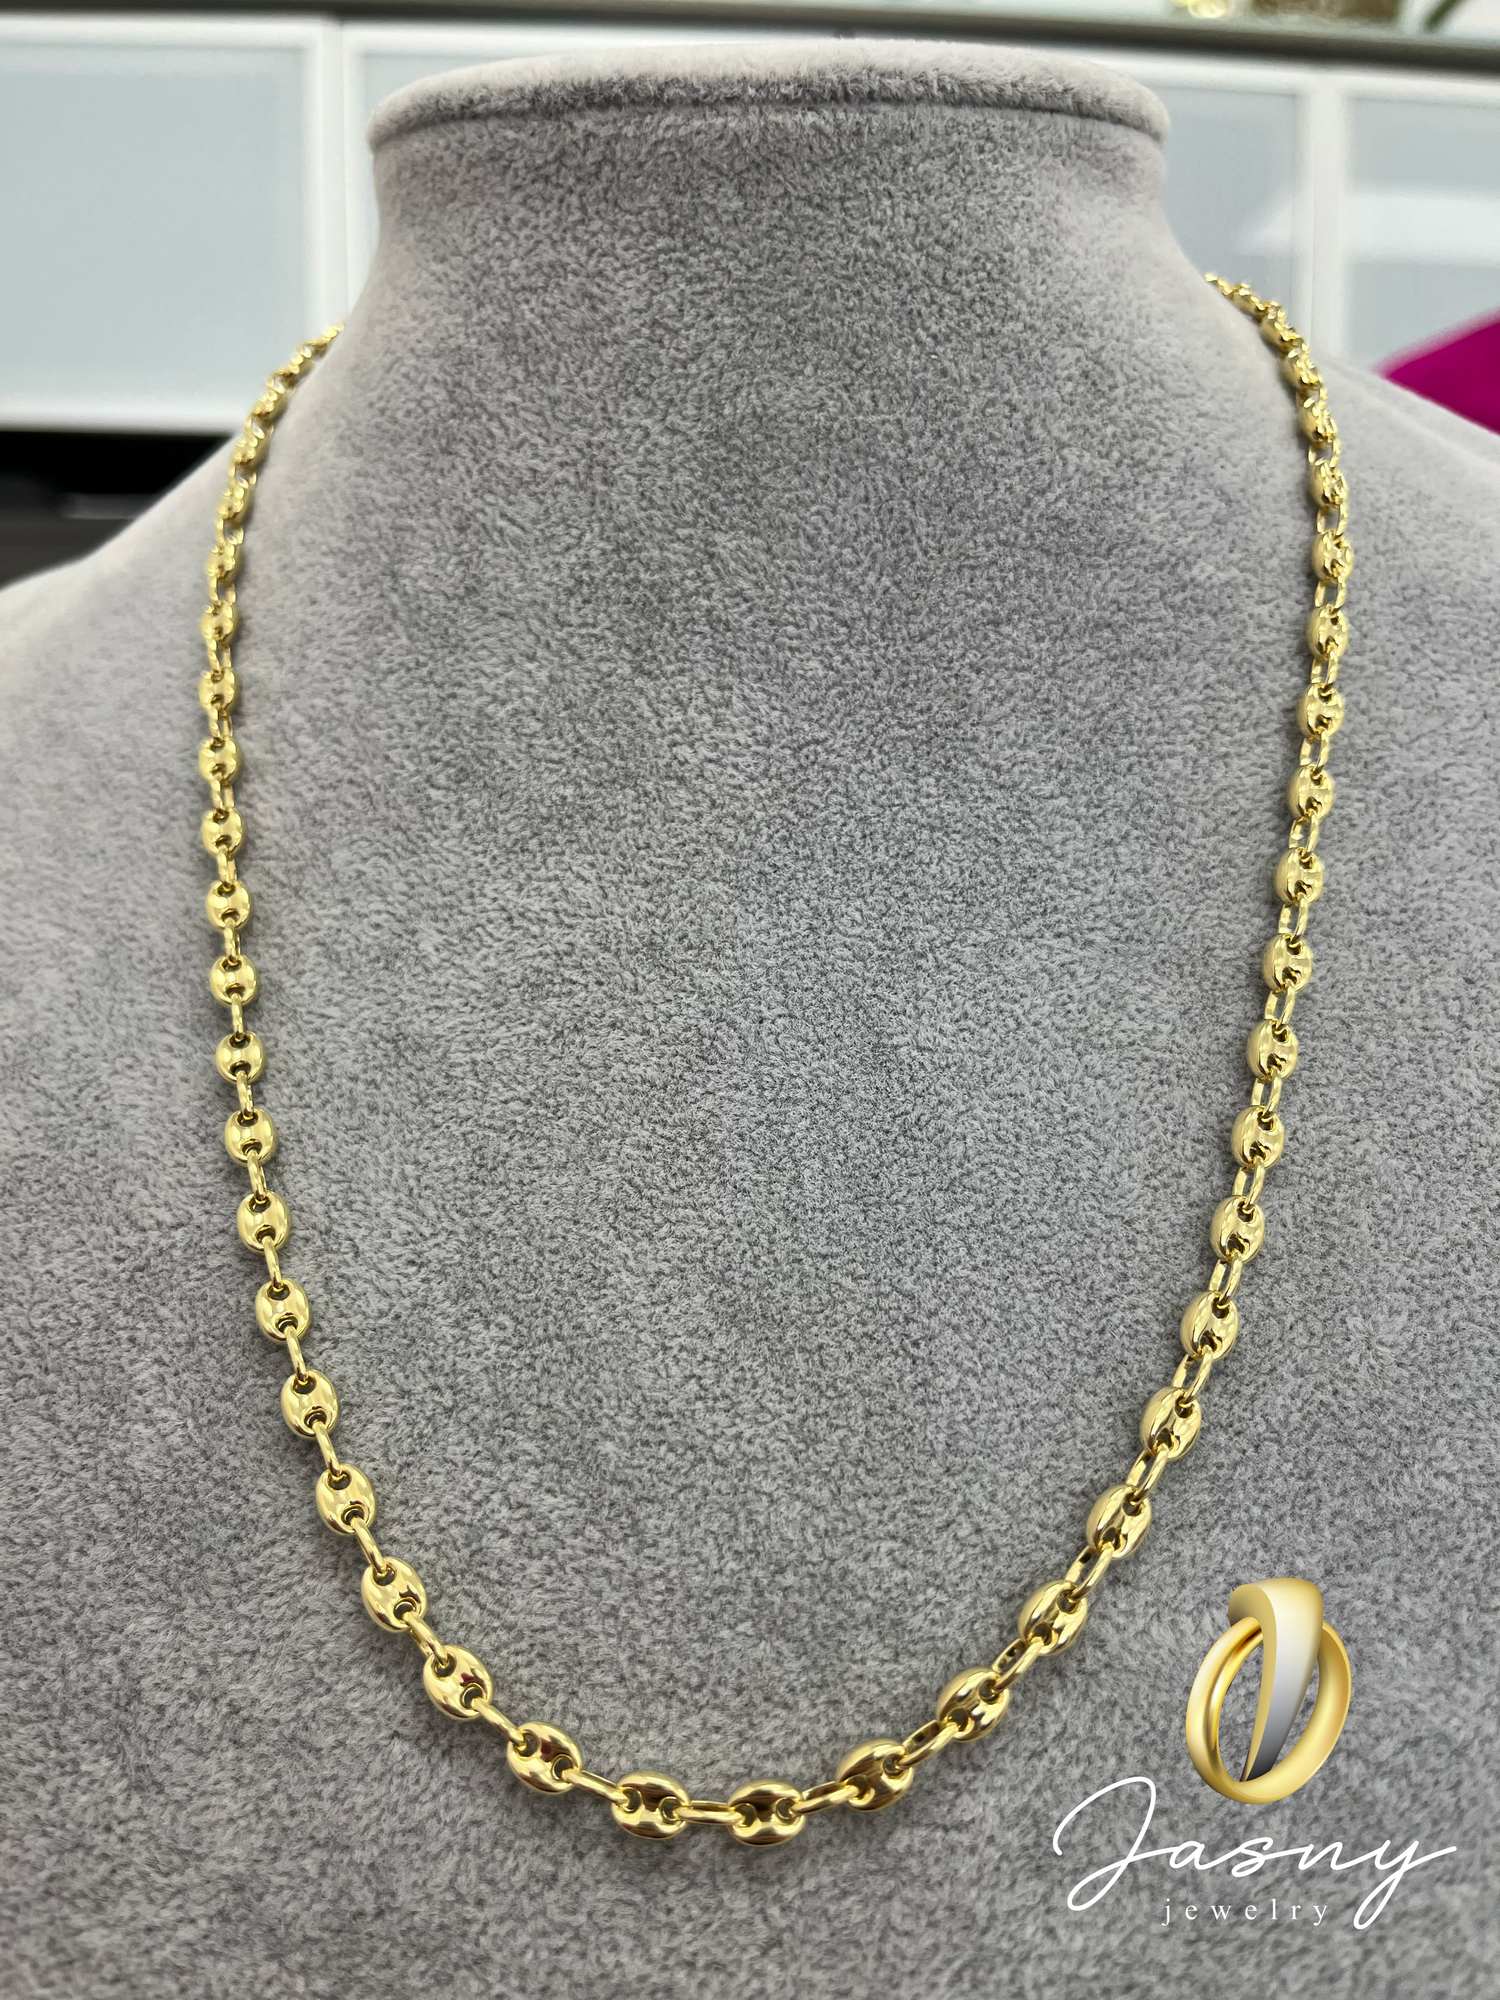 Obligatorio exilio cultura CADENA GUCCI ORO 14K / 14K GOLD GUCCI CHAIN – Jasny Jewelry